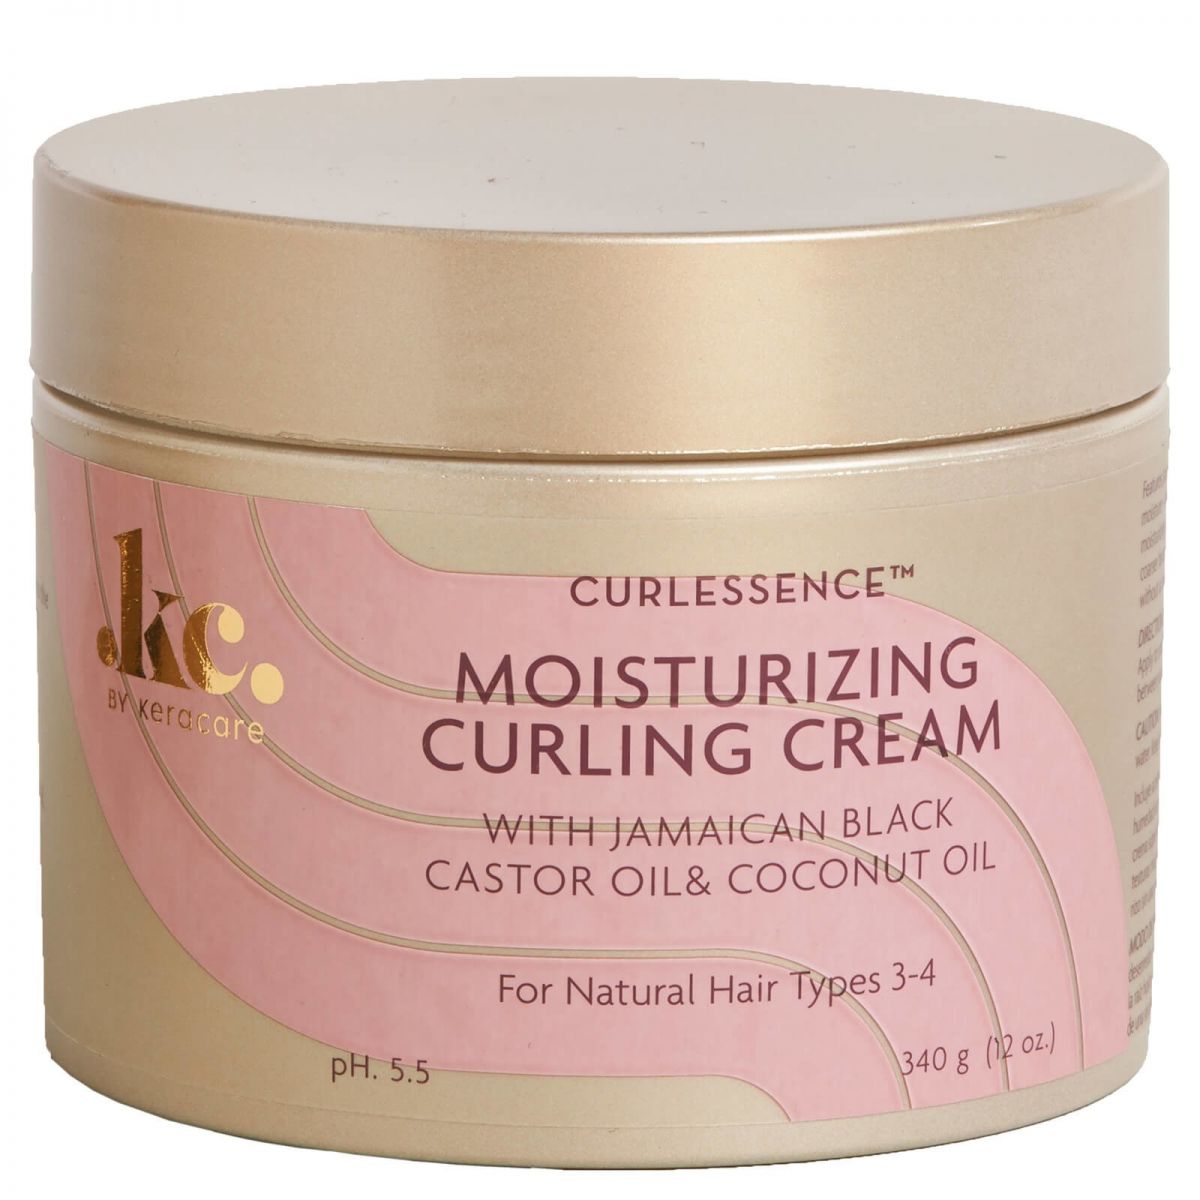 Keracare curlessence Moisturizing Curling Cream 320 GR